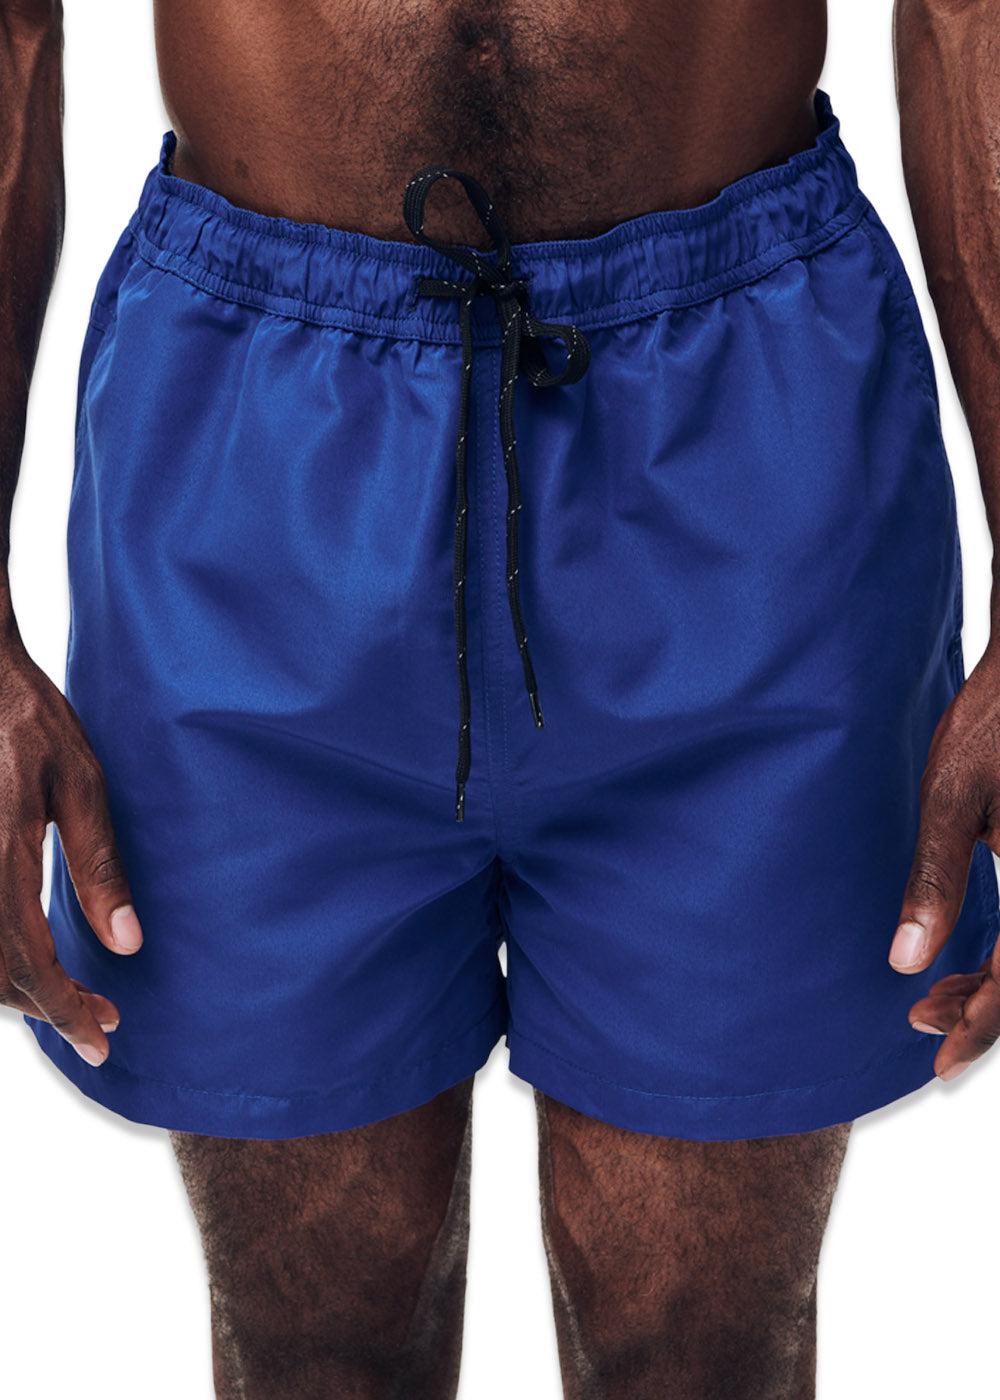 William shorts - Blue